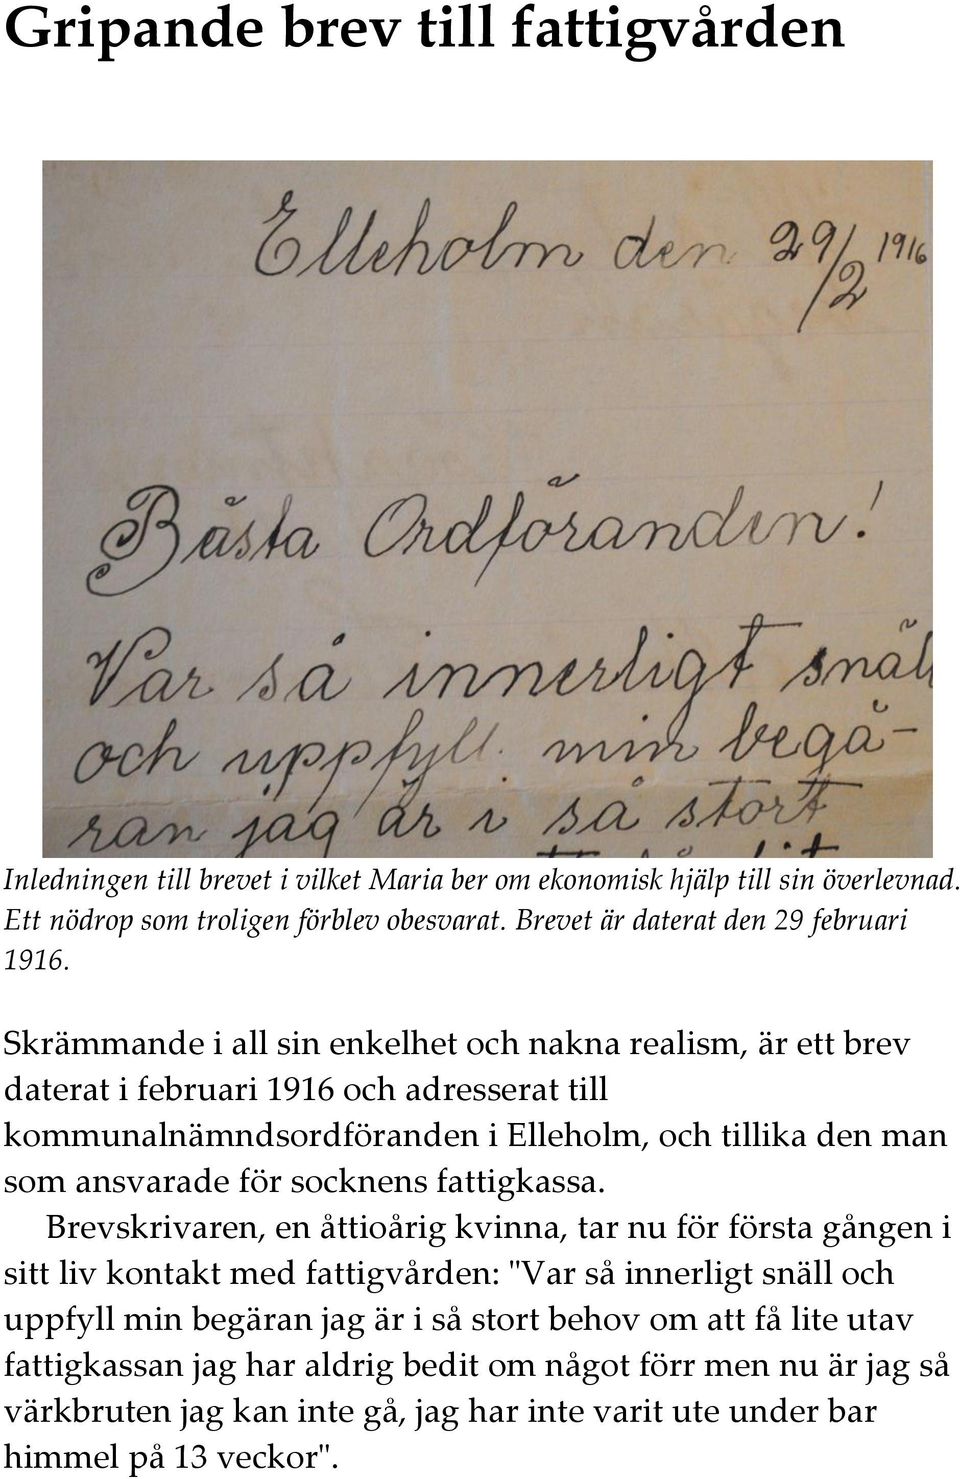 Skrämmande i all sin enkelhet och nakna realism, är ett brev daterat i februari 1916 och adresserat till kommunalnämndsordföranden i Elleholm, och tillika den man som ansvarade för